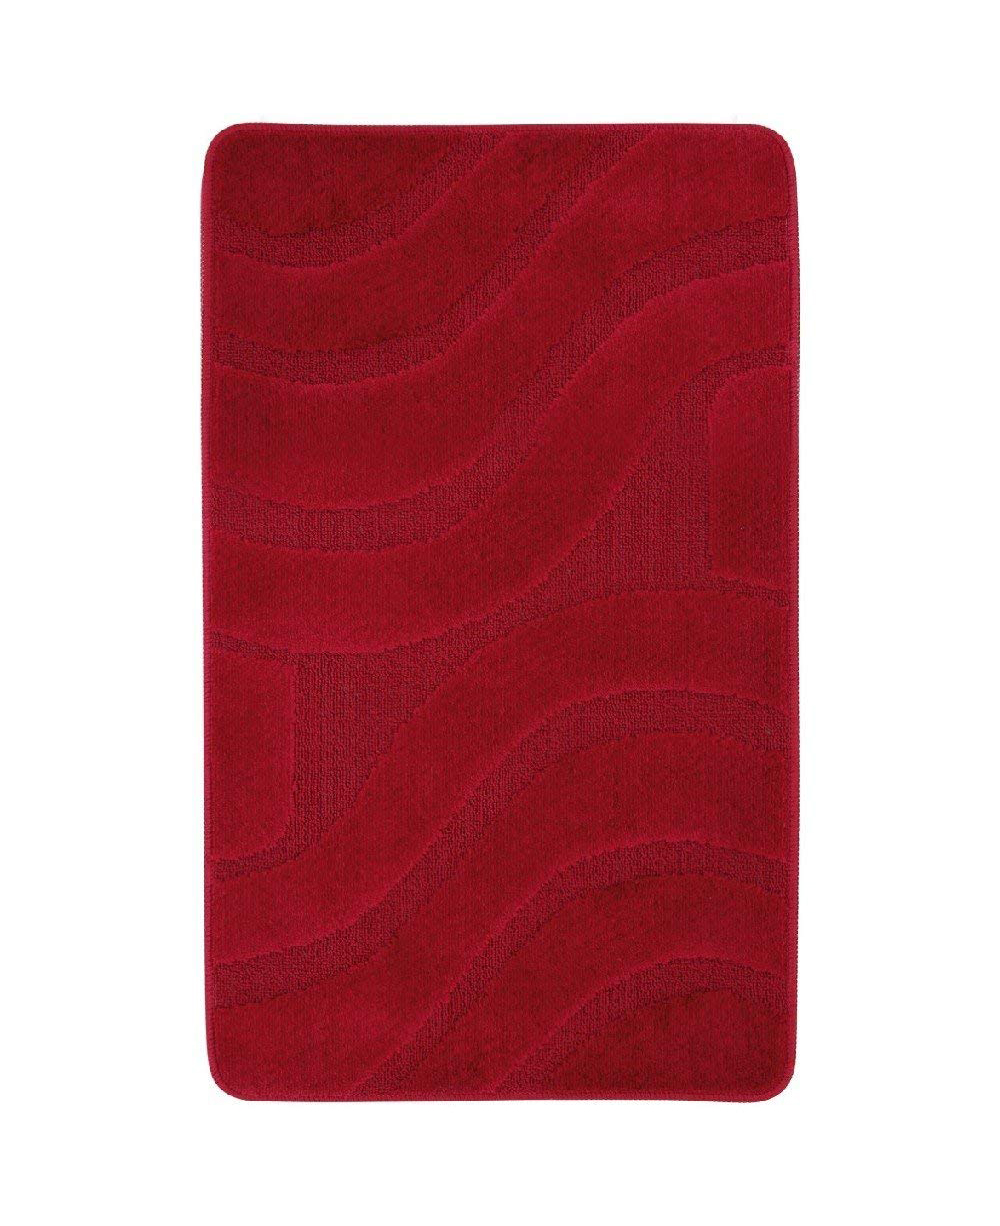 Tappeto polipropilene serie onda 50x80 cm rosso